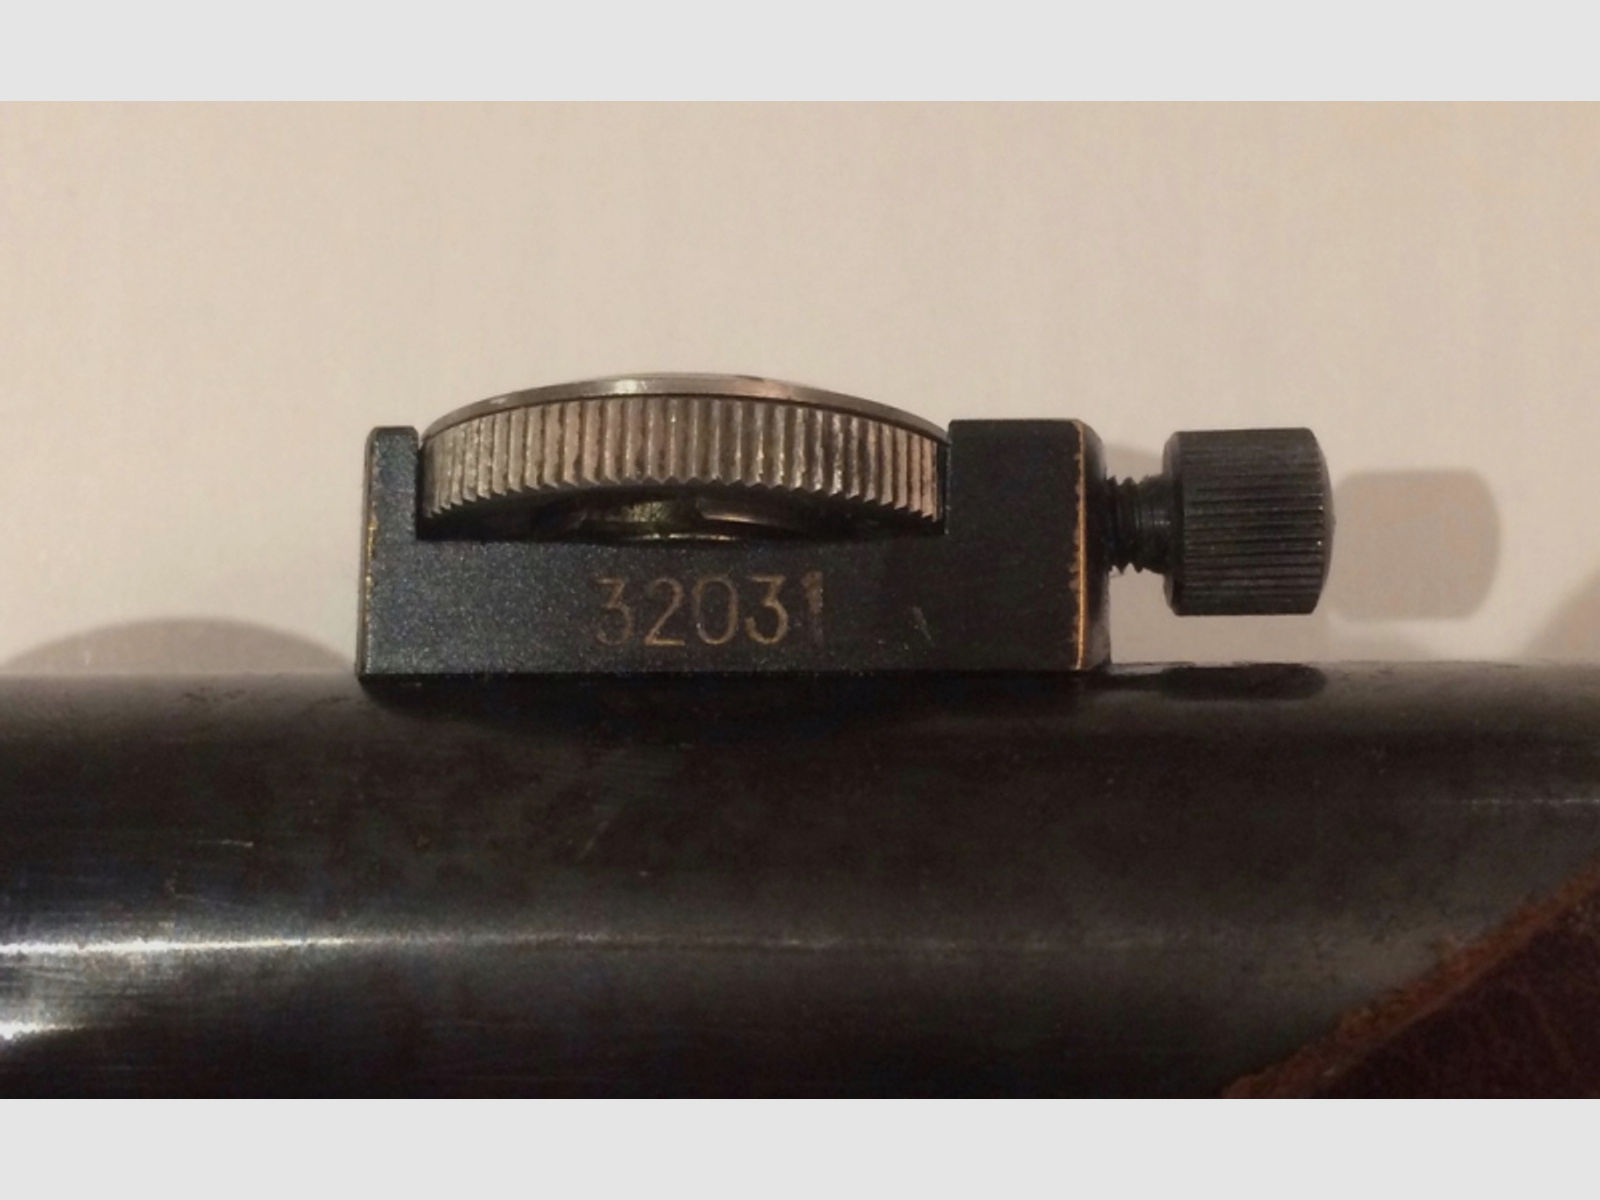 Zielfernrohr ZF39 Ajack K98 Mauser